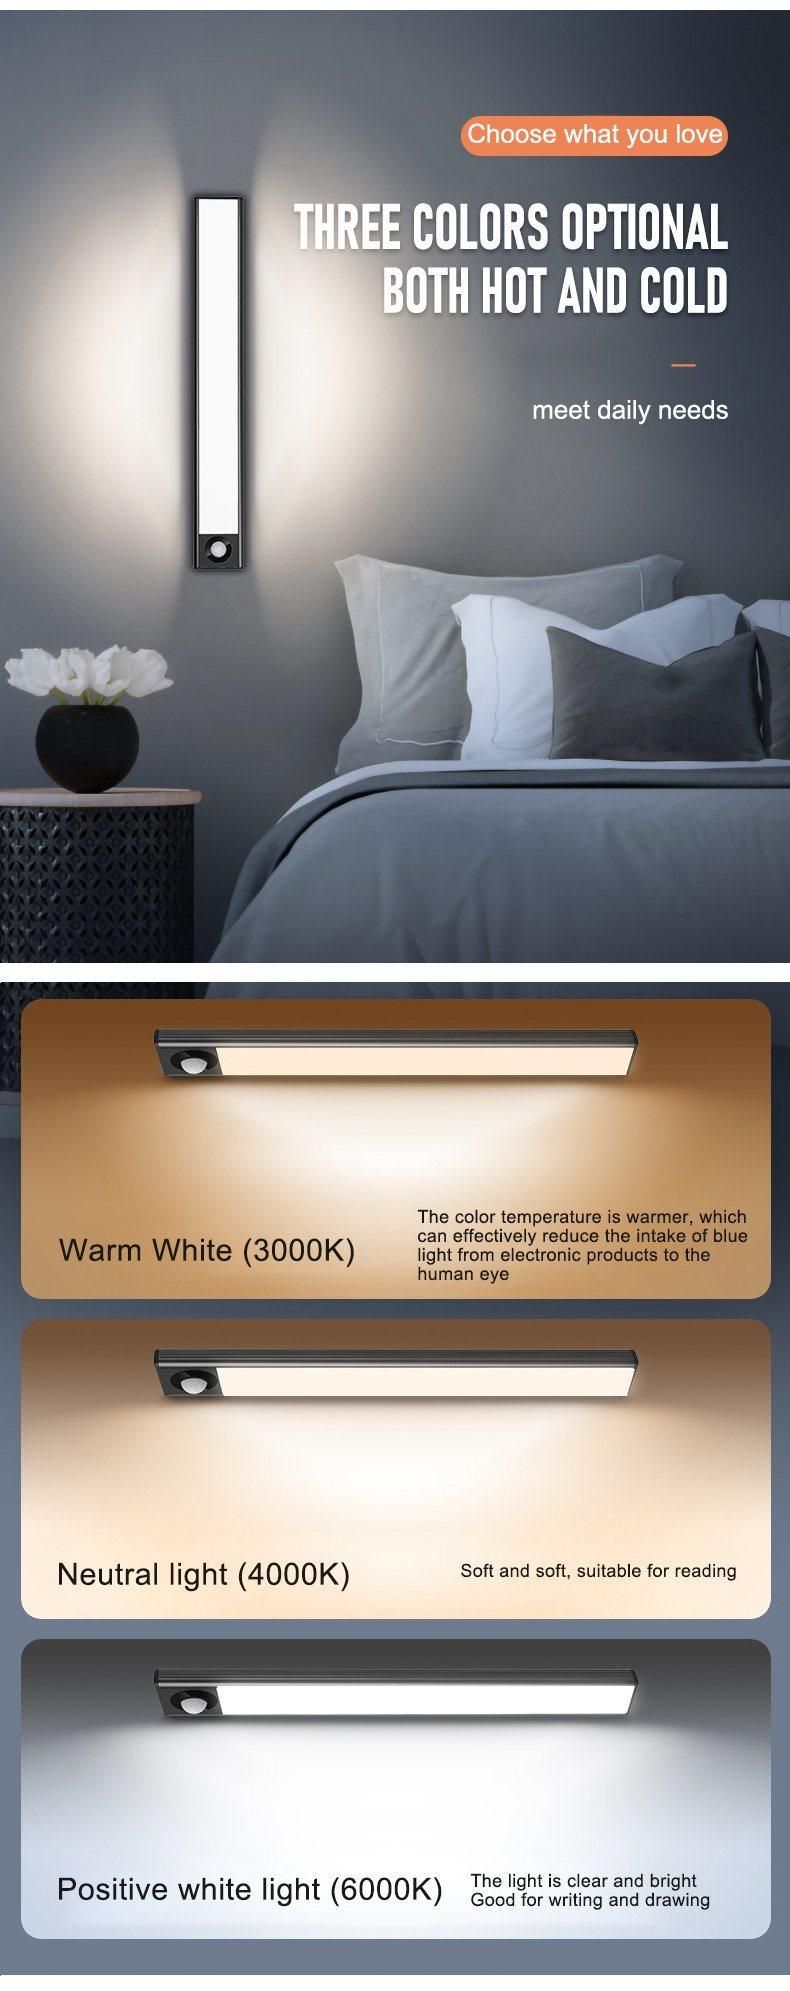 Wholesale ODM OEM Hanging Surface Easy Installation 3cm Glue Back Magnetic Strip Smart Sensing LED Light for Cabinet